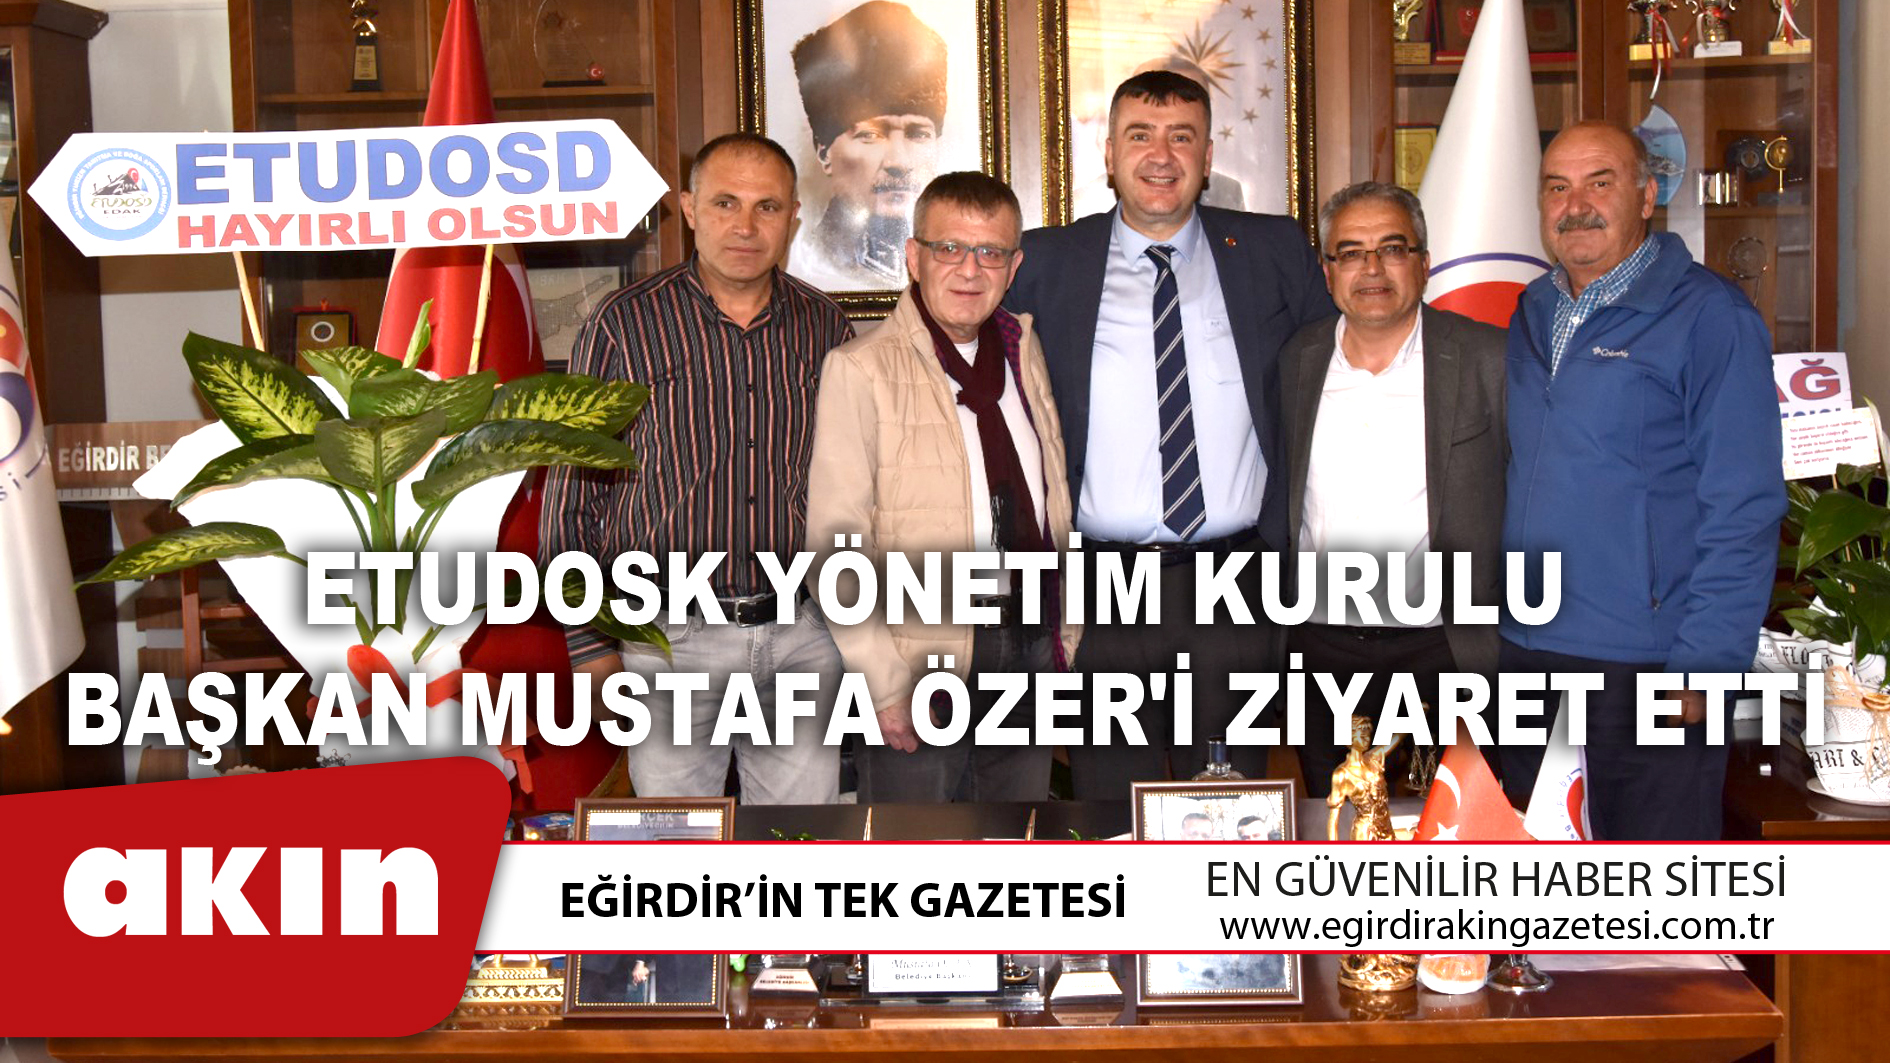 ETUDOSK Yönetim Kurulu, Başkan Mustafa Özer'i Ziyaret Etti